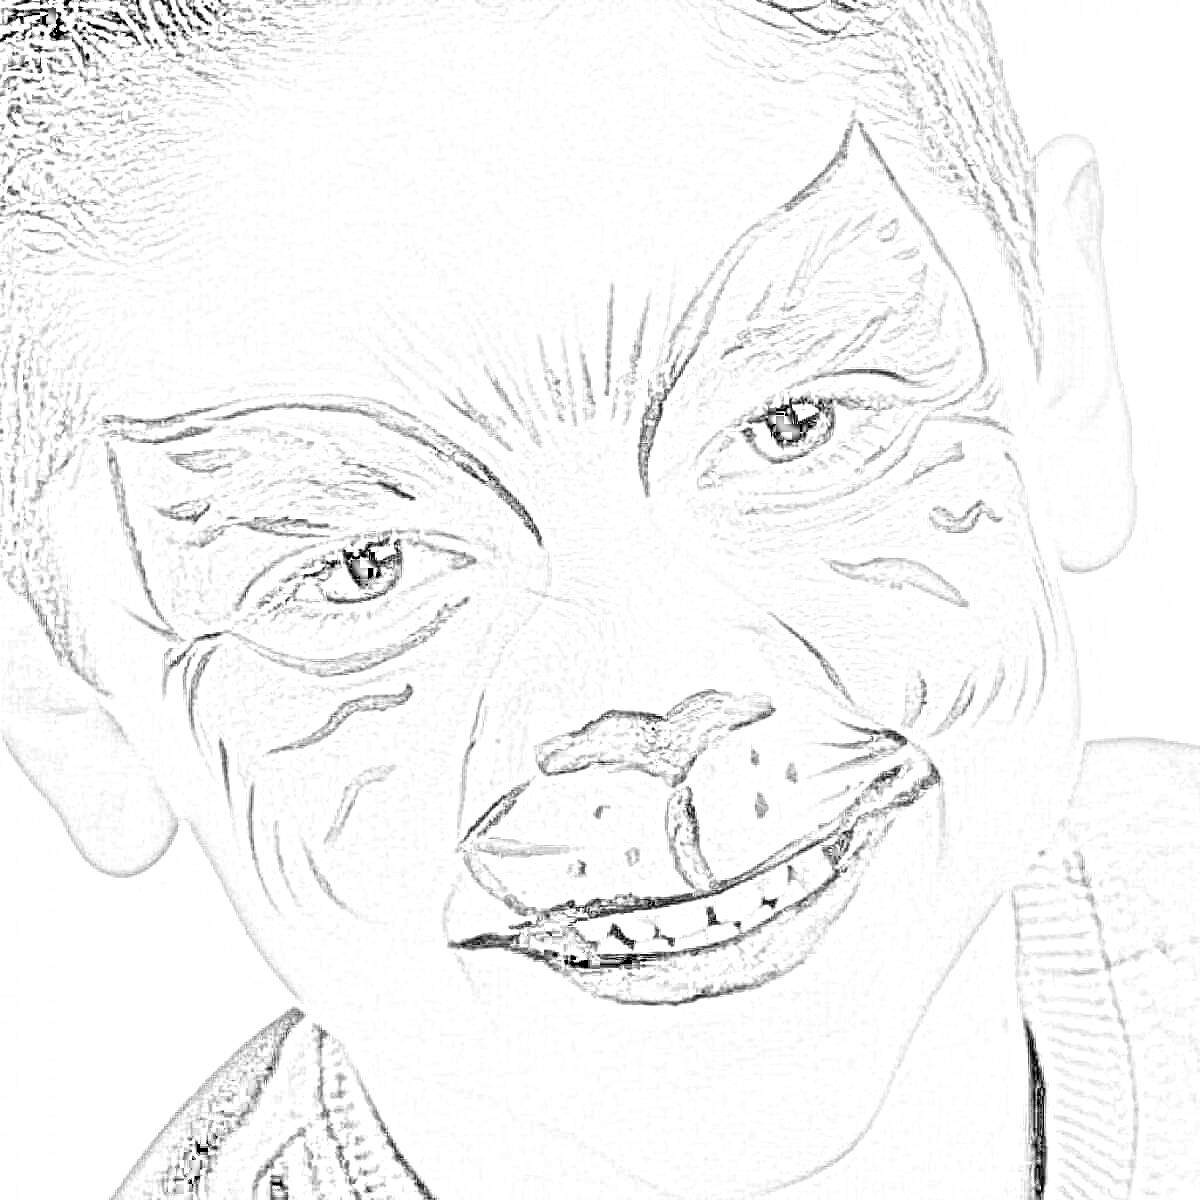 Раскраска Раскрашеное лицо мальчика в образе кошки. Контуры меха и деталей на лбу, щеках и вокруг глаз, нос черный с белыми пятнами, губы черные.